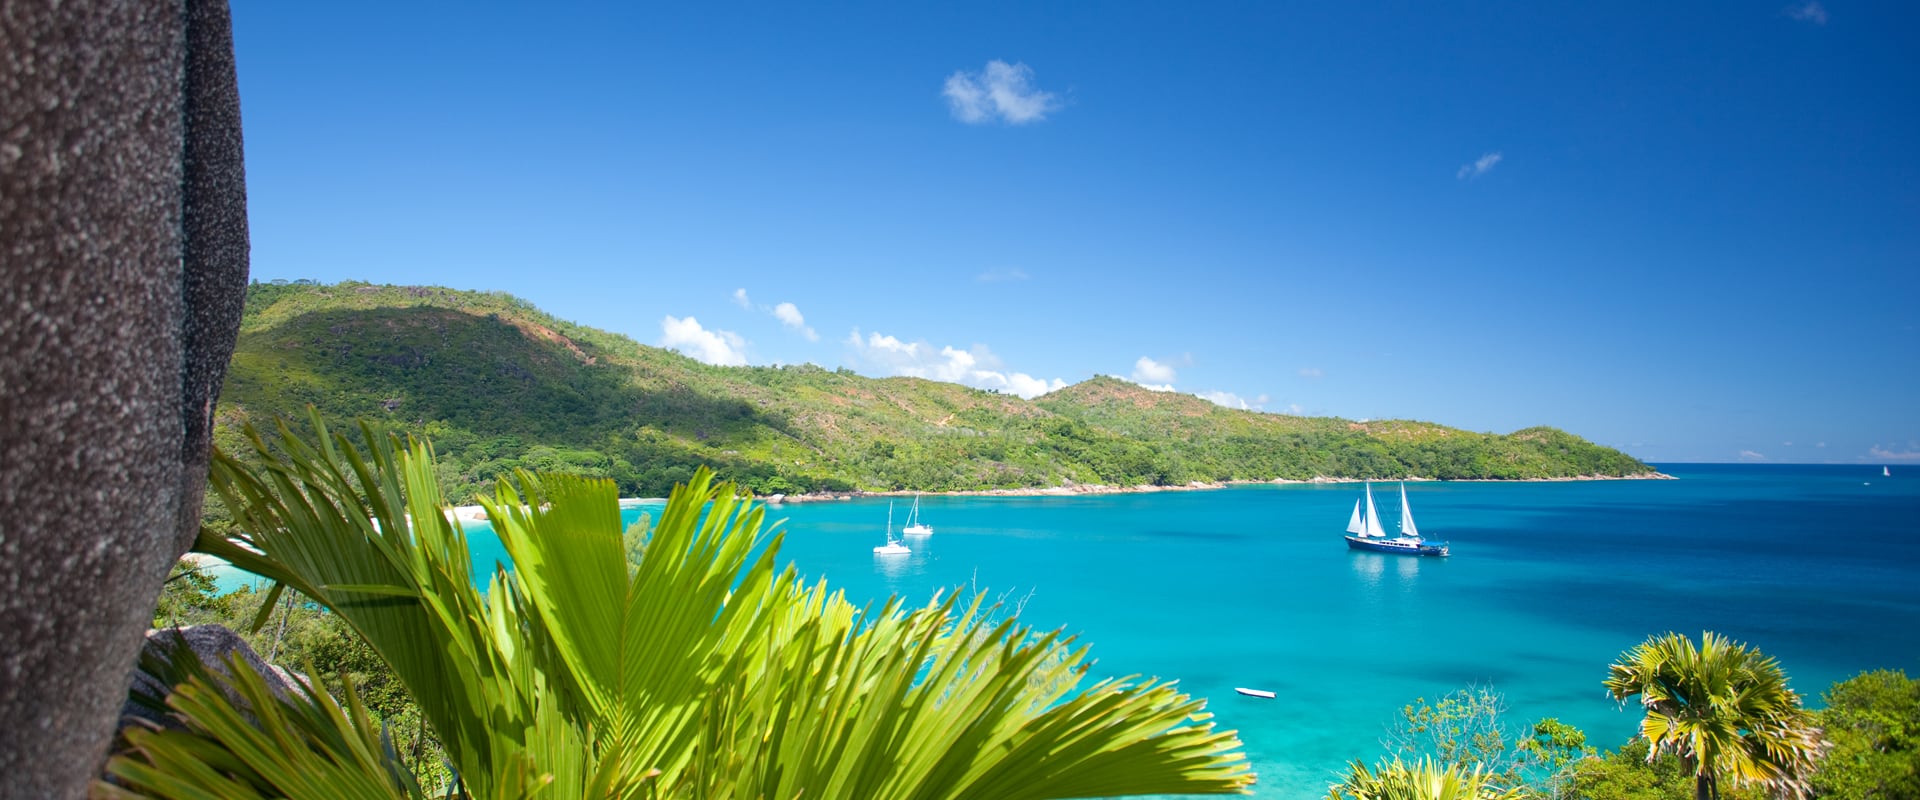 7 Kleinschalige Cruises in Seychellen - LiveAboard.com